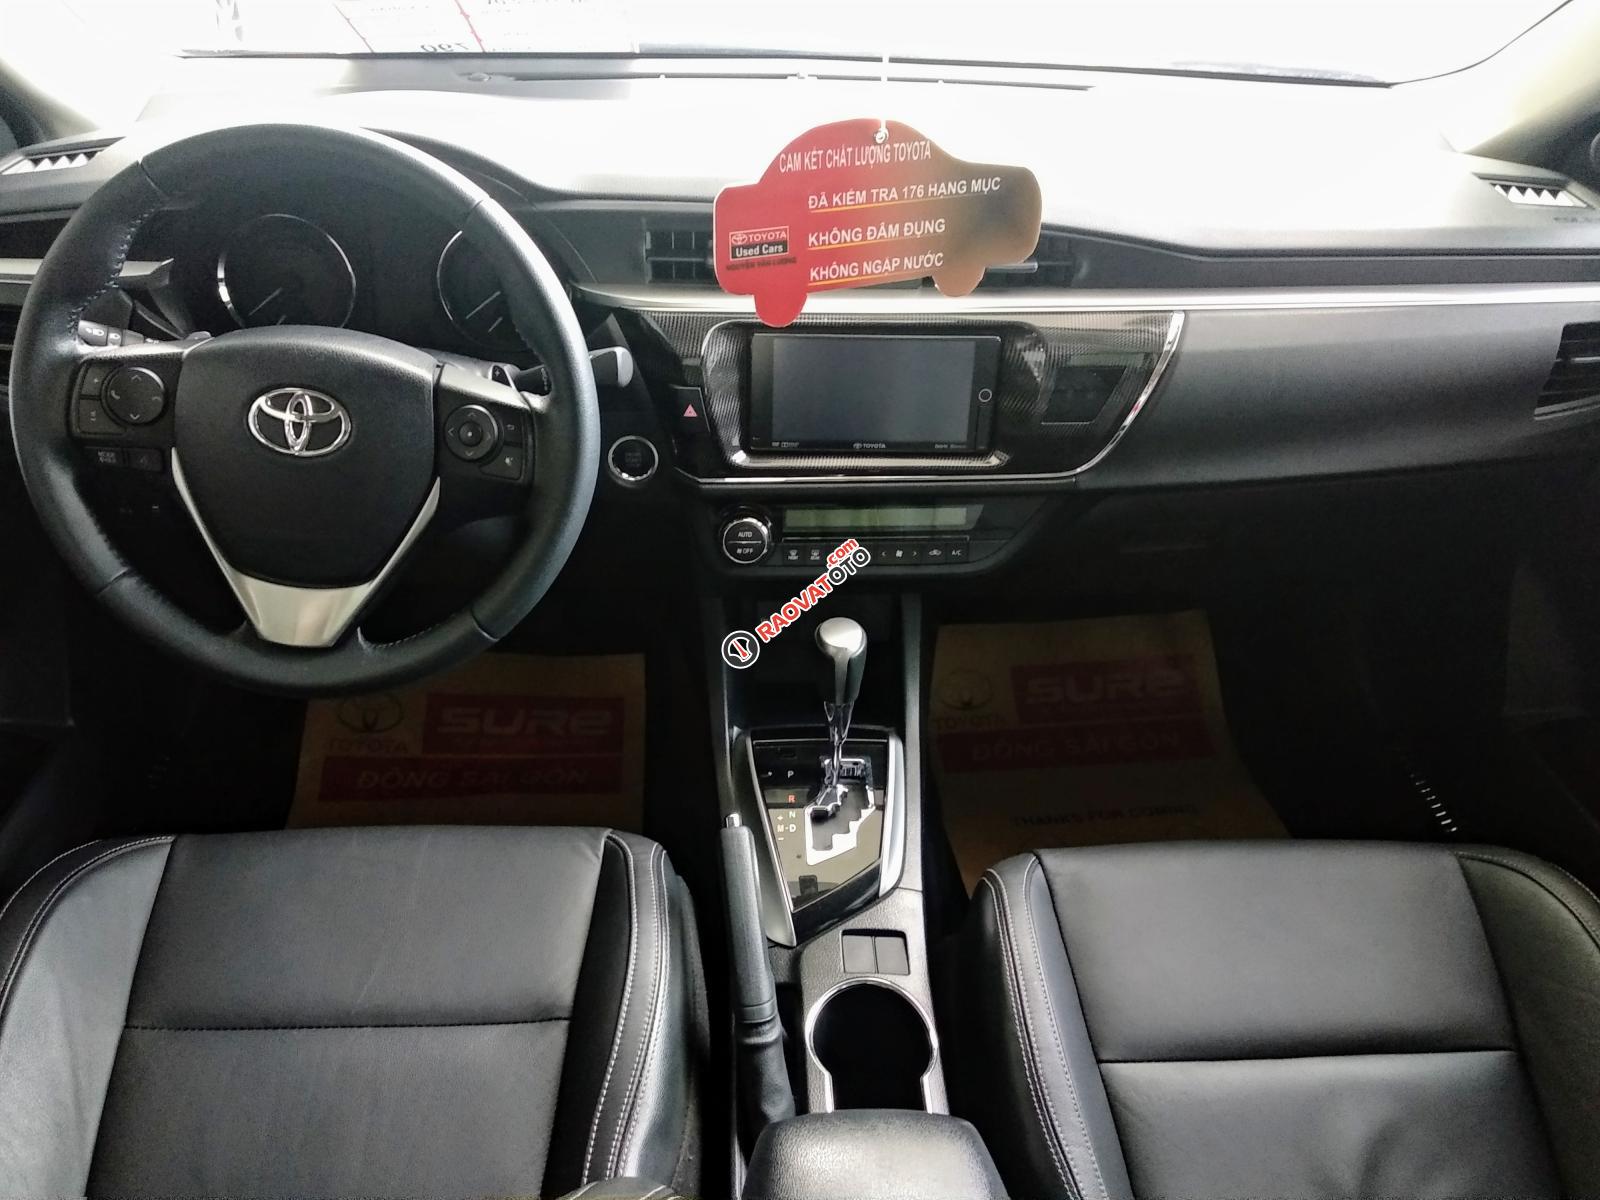 Bán Toyota Corolla Altis 2.0V đời 2016, màu đen, ưu đãi giá tốt hơn cho khách nào đến xem xe trực tiếp-3